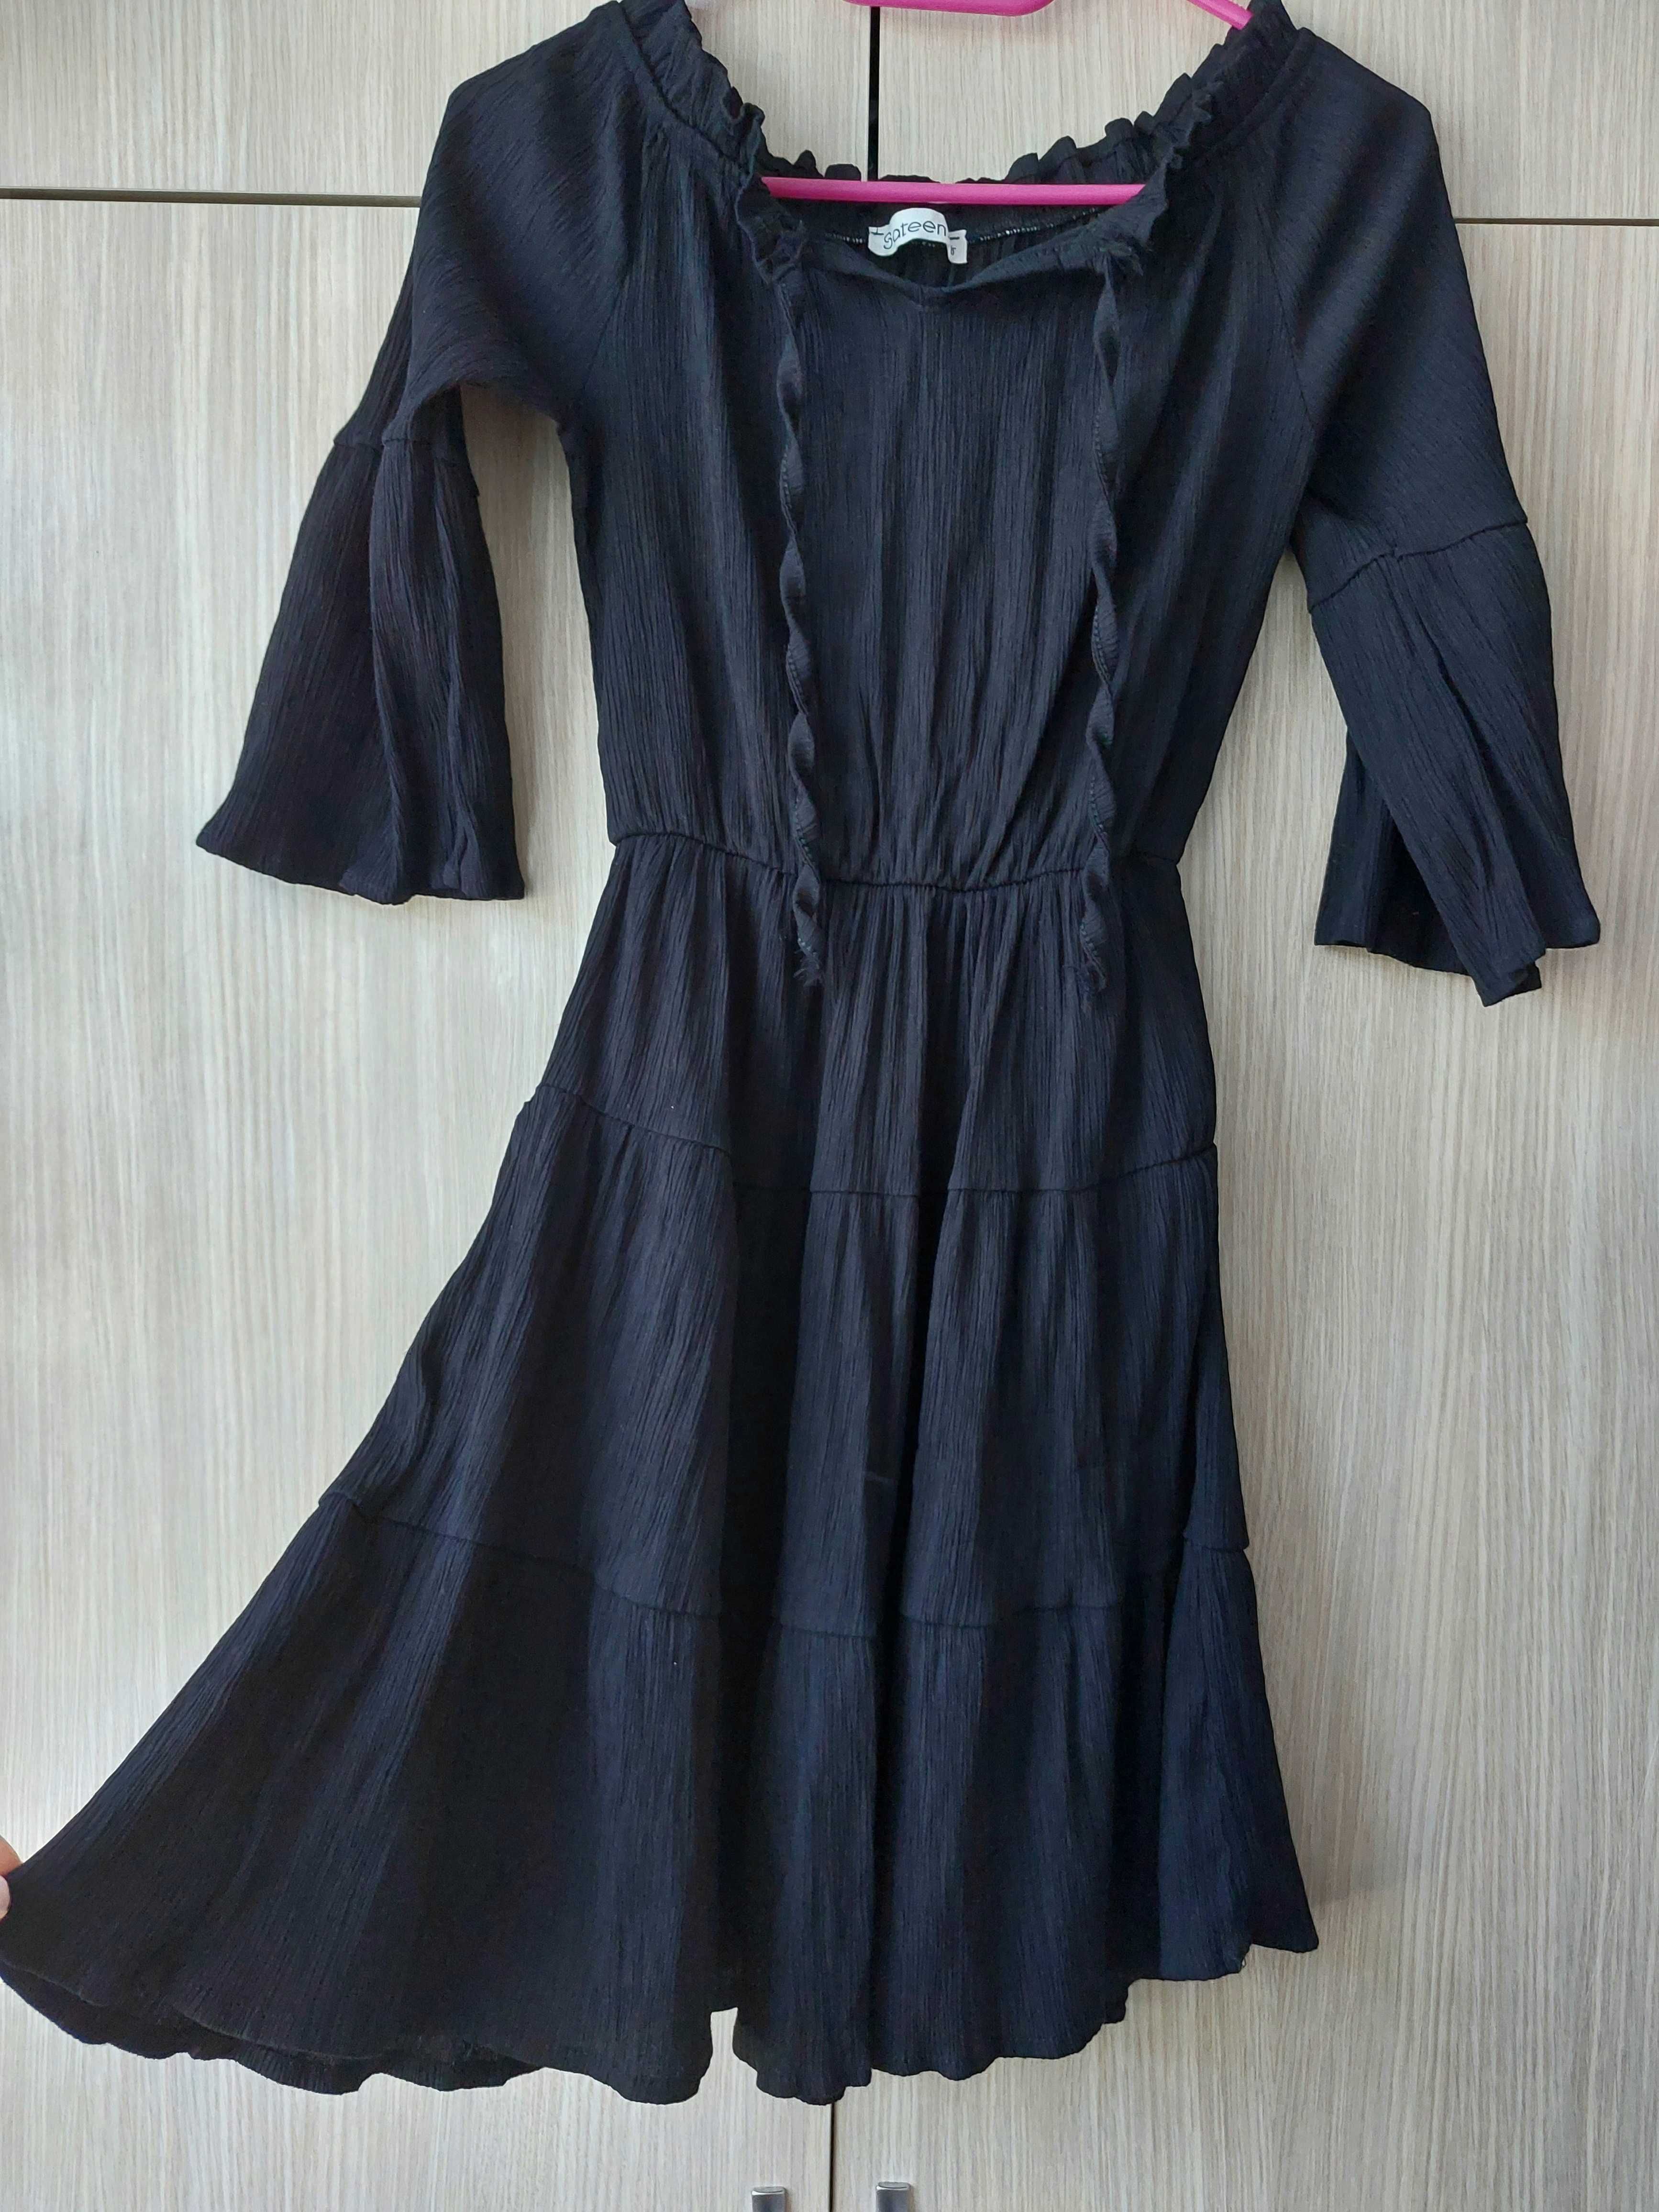 Дамска черна ефирна рокля размер М